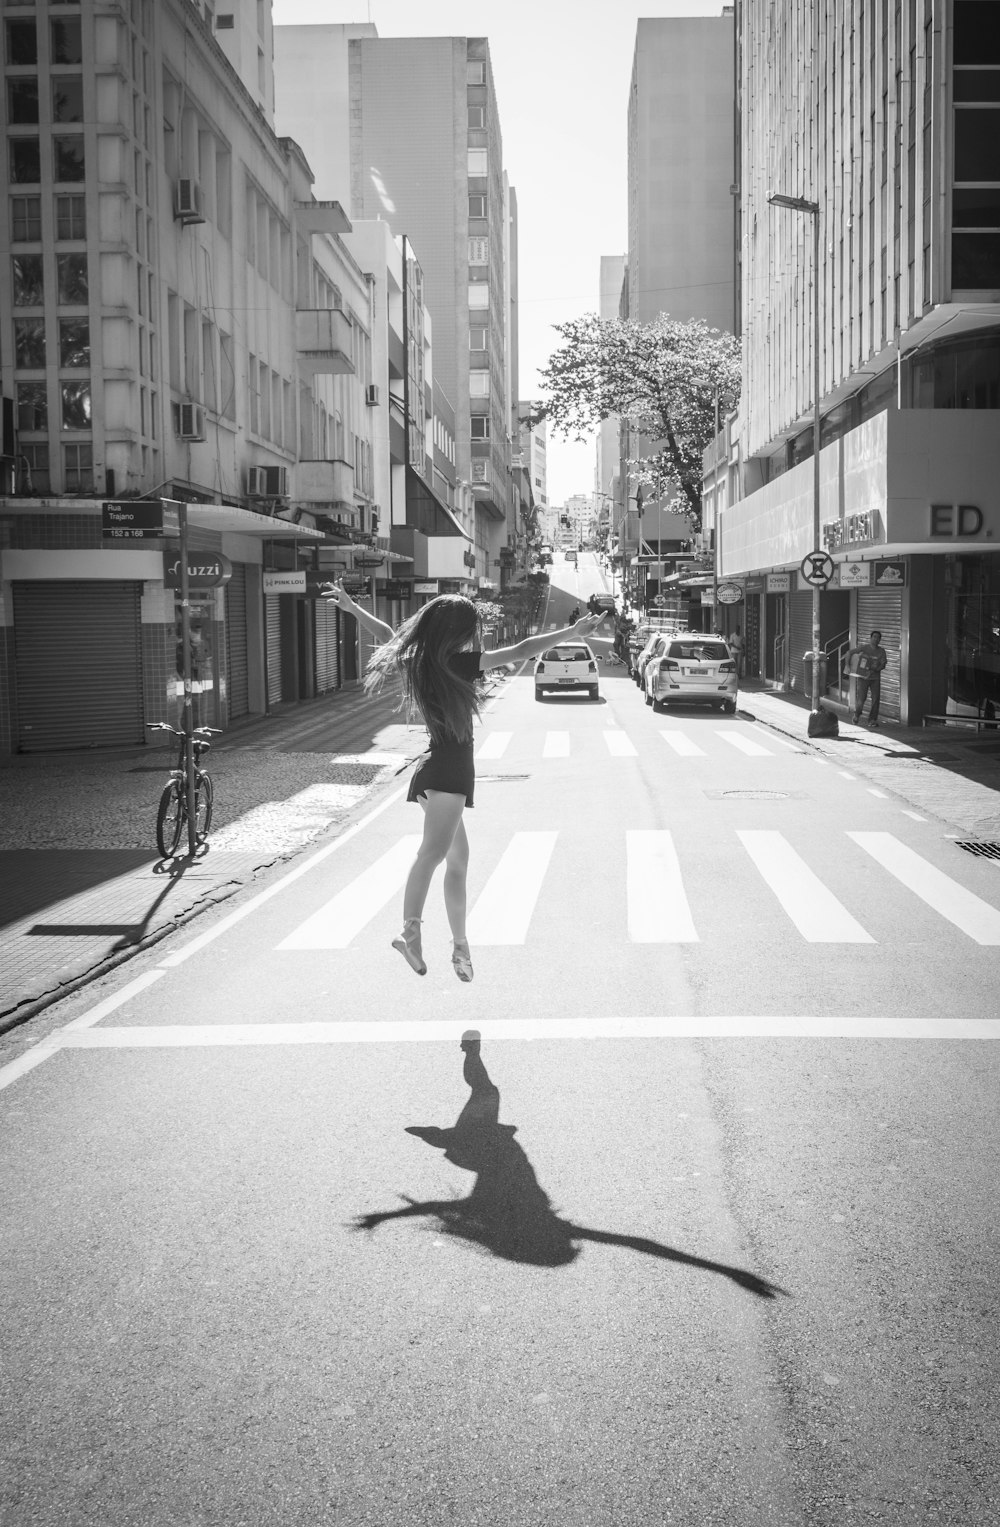 Foto in scala di grigi di una donna che cammina sulla corsia pedonale